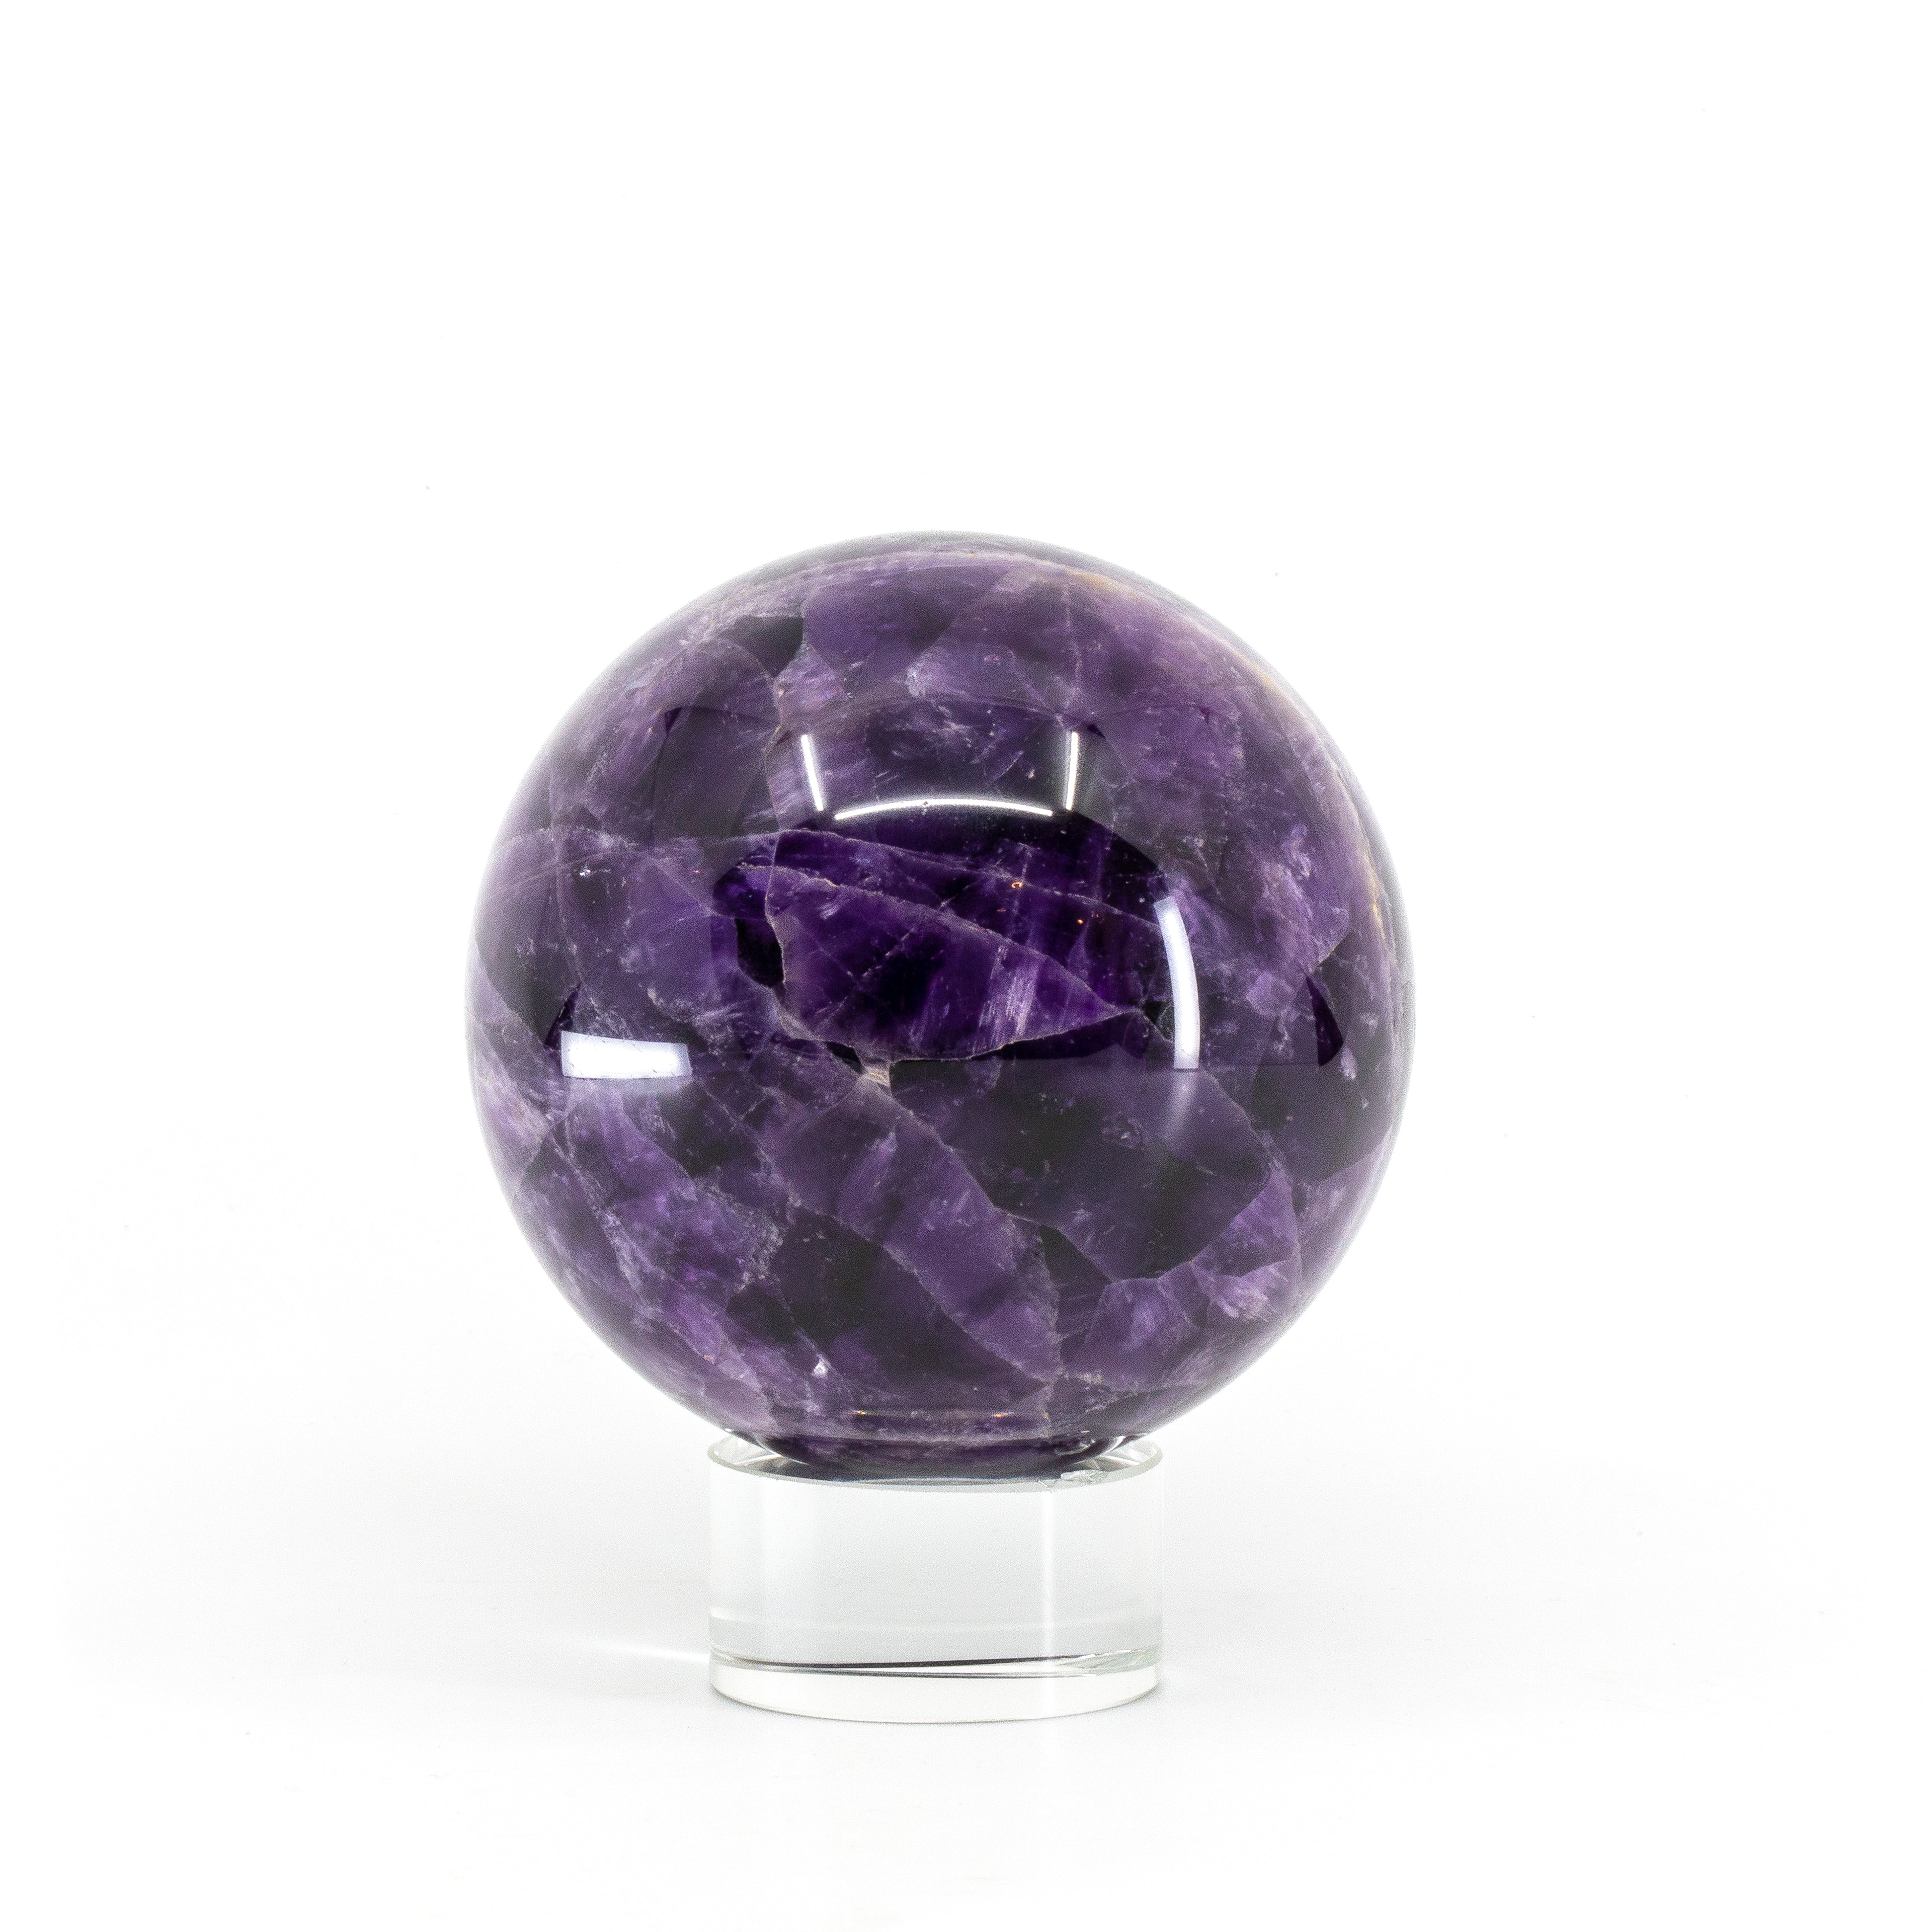 Amethyst ' Flower ' 3 inch 1.46 lb Polished Crystal Sphere - Tanzania